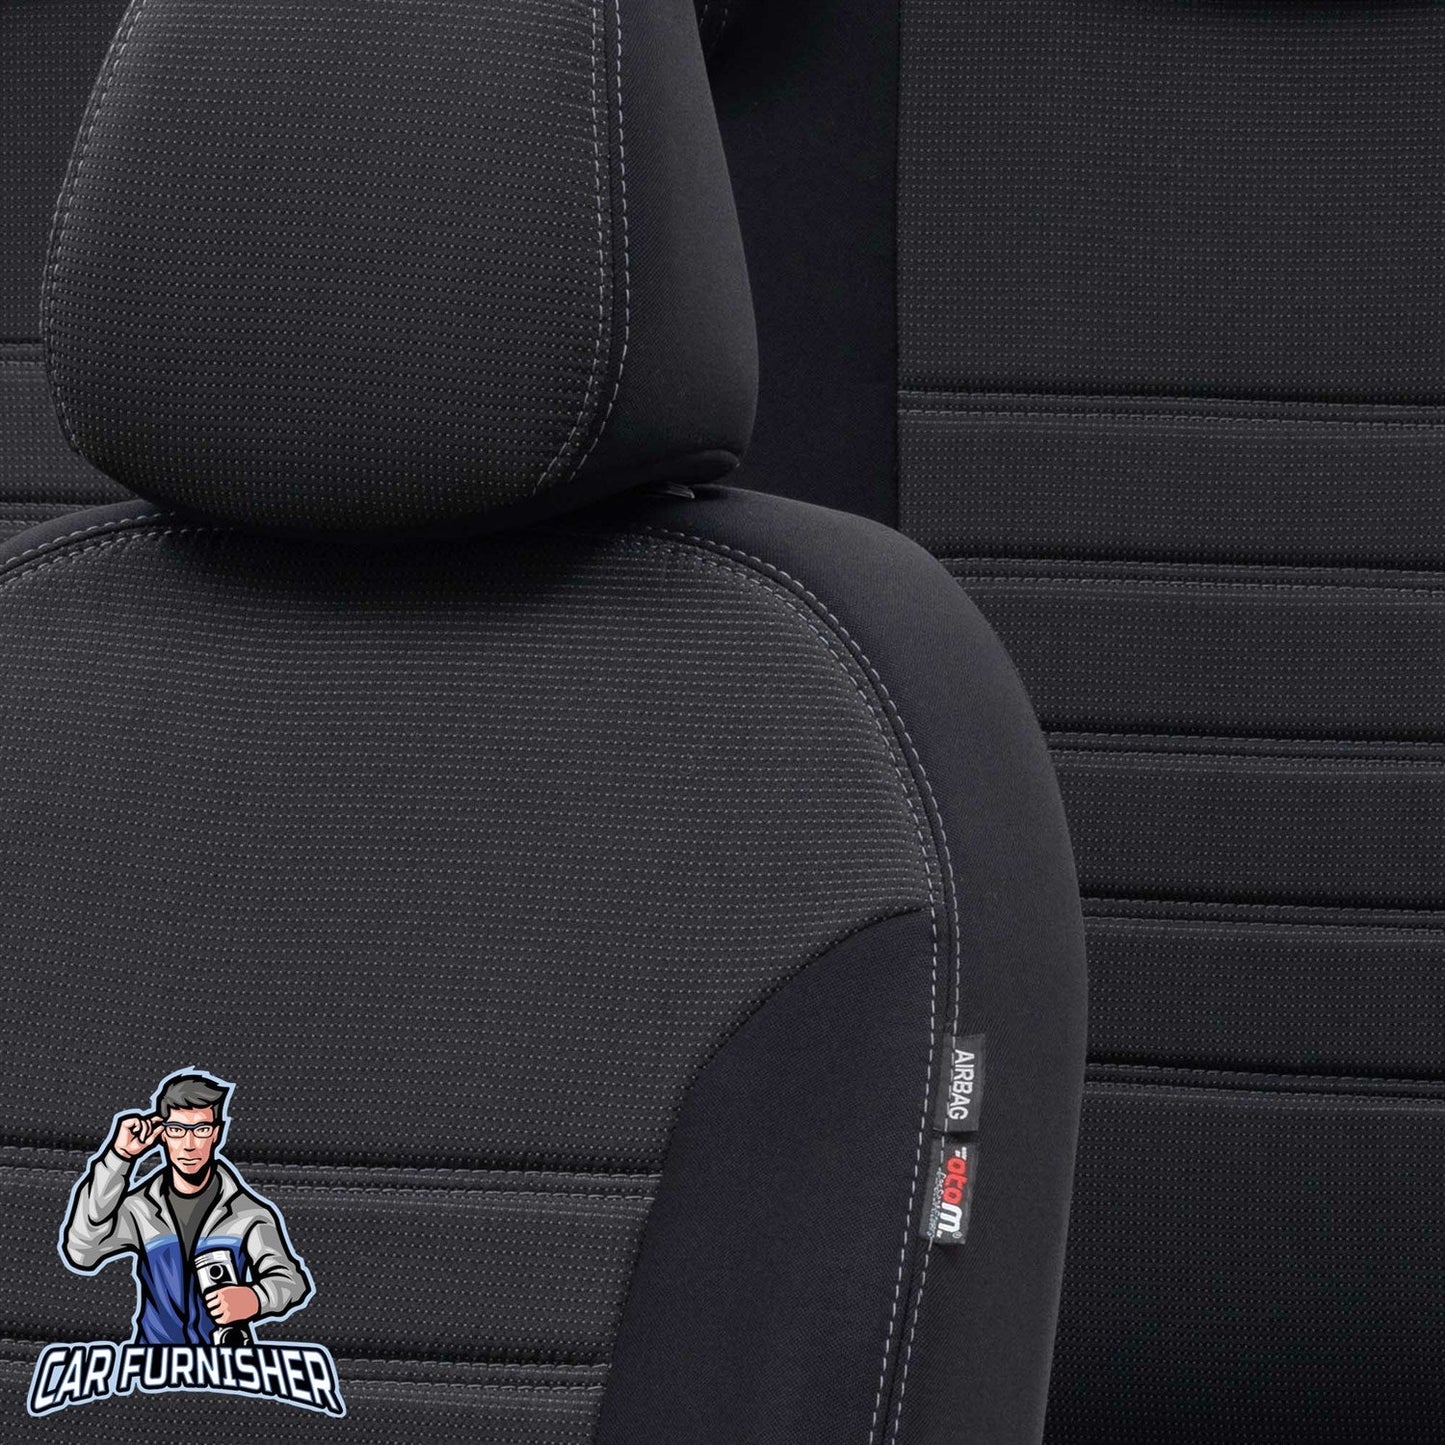 Kia Rio Seat Covers Original Jacquard Design Dark Gray Jacquard Fabric